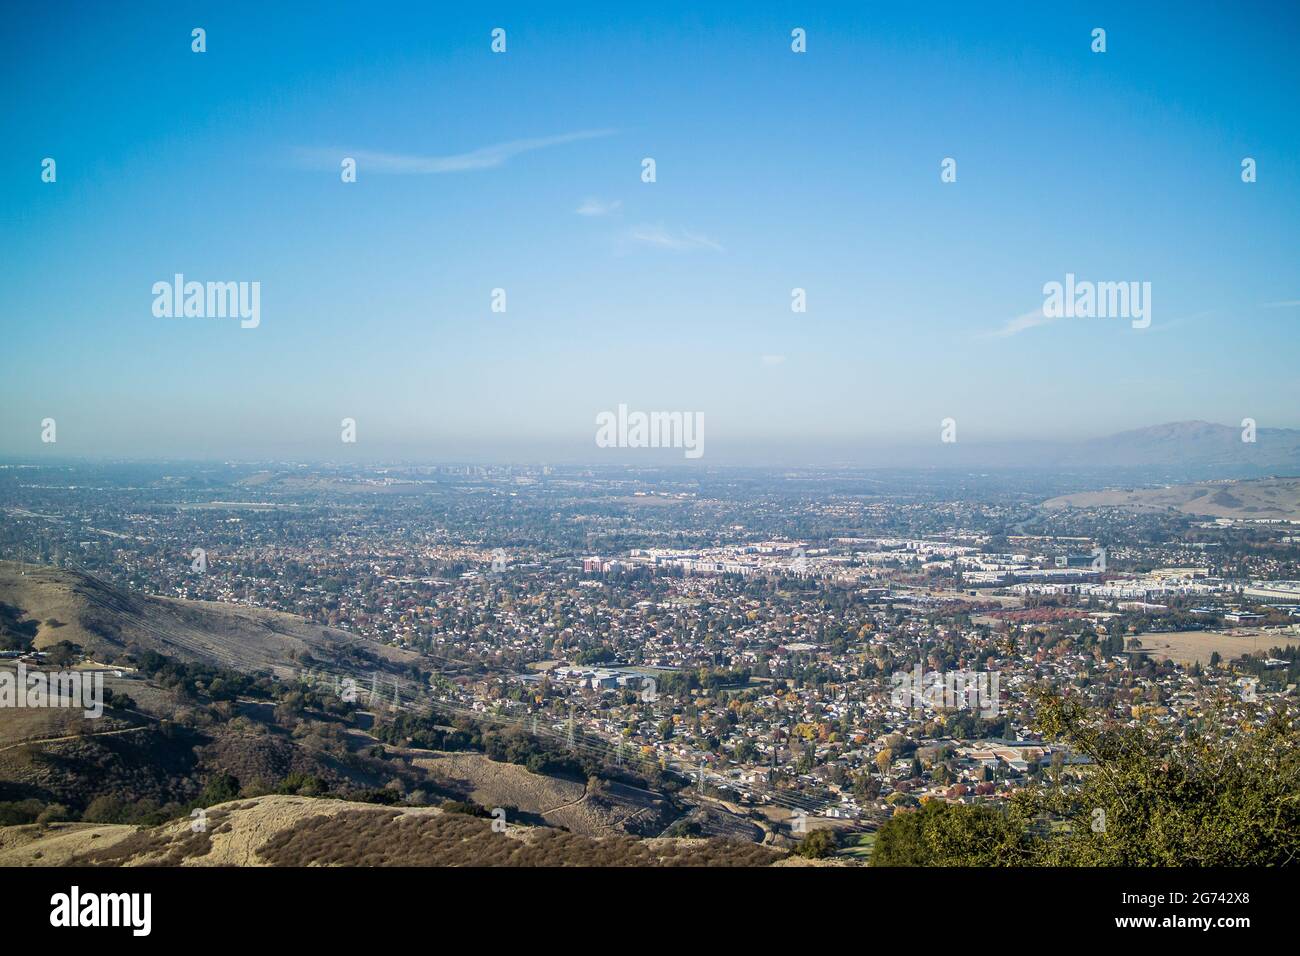 Blick auf das Silicon Valley vom Coyote Peak im Santa Teresa Park, mit Blick nach Norden über San Jose, Santa Clara und Sunnyvale bis zur San Francisco Bay. Stockfoto